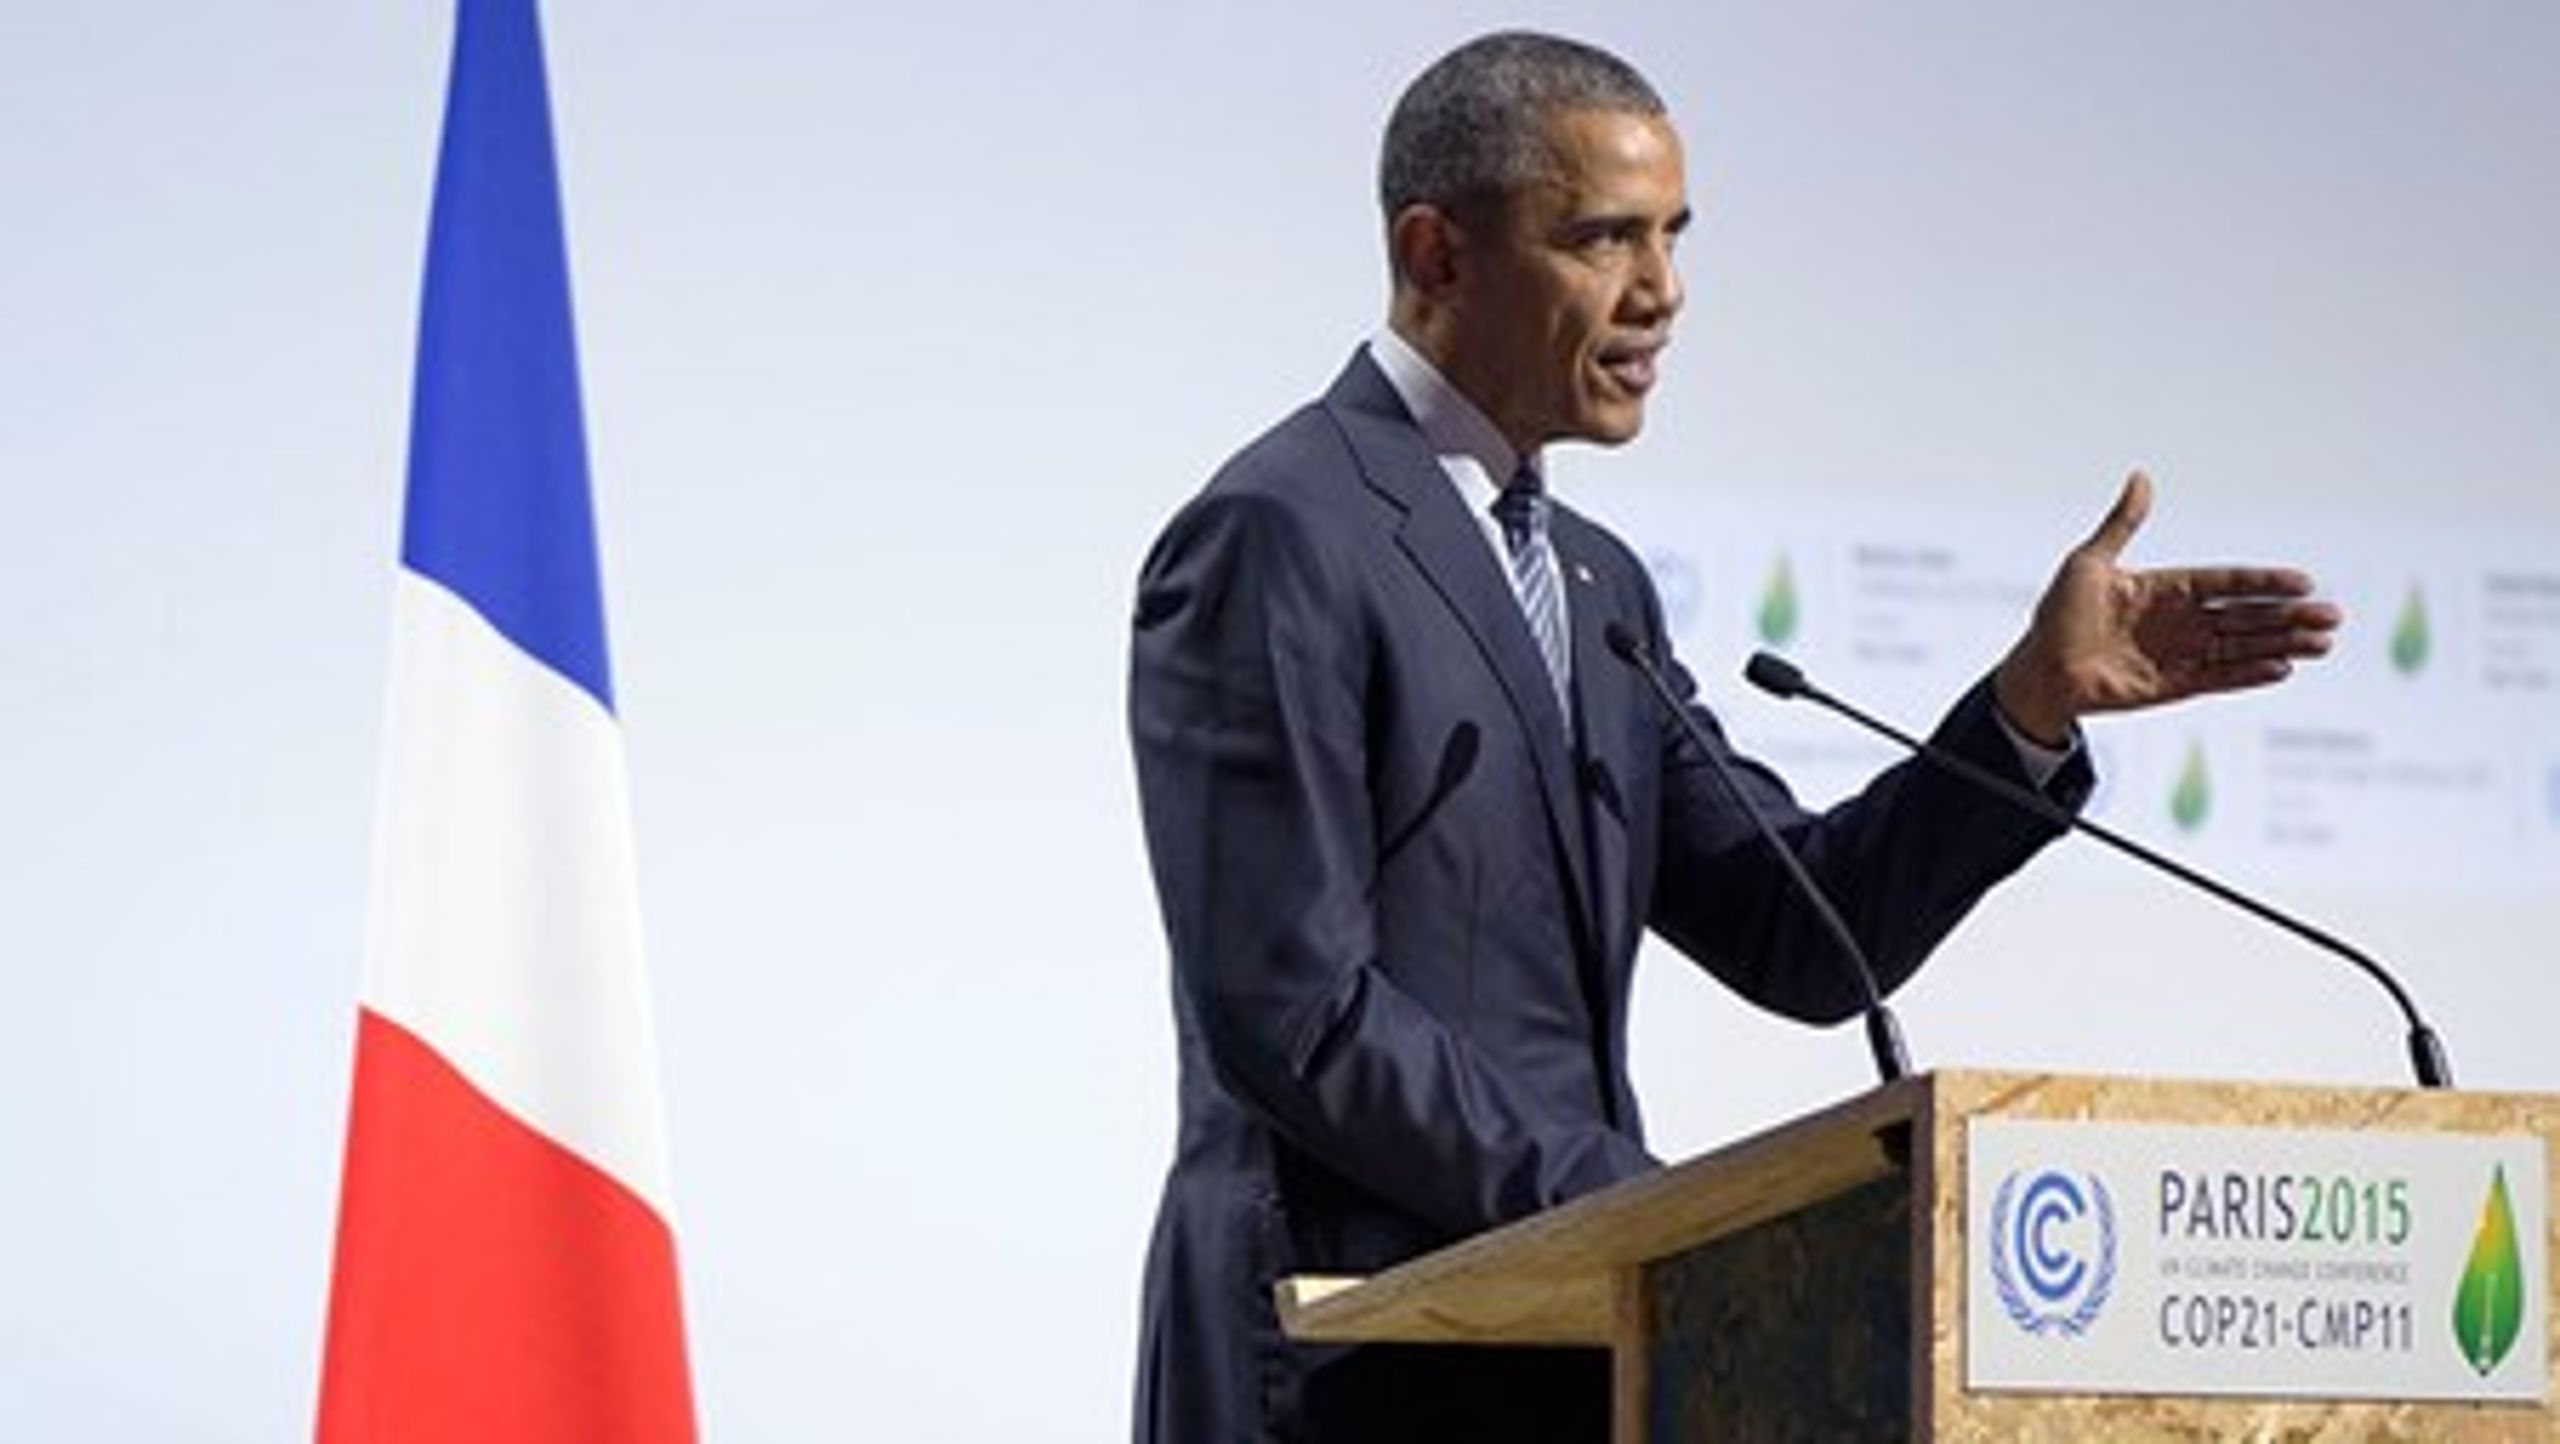 Politisk har præsident Obama taget medansvar for at forhandle en global klimaaftale på plads ved COP21, men også hjemme i USA har han leveret løft til energiomstillingen,&nbsp;skriver DI Energi.